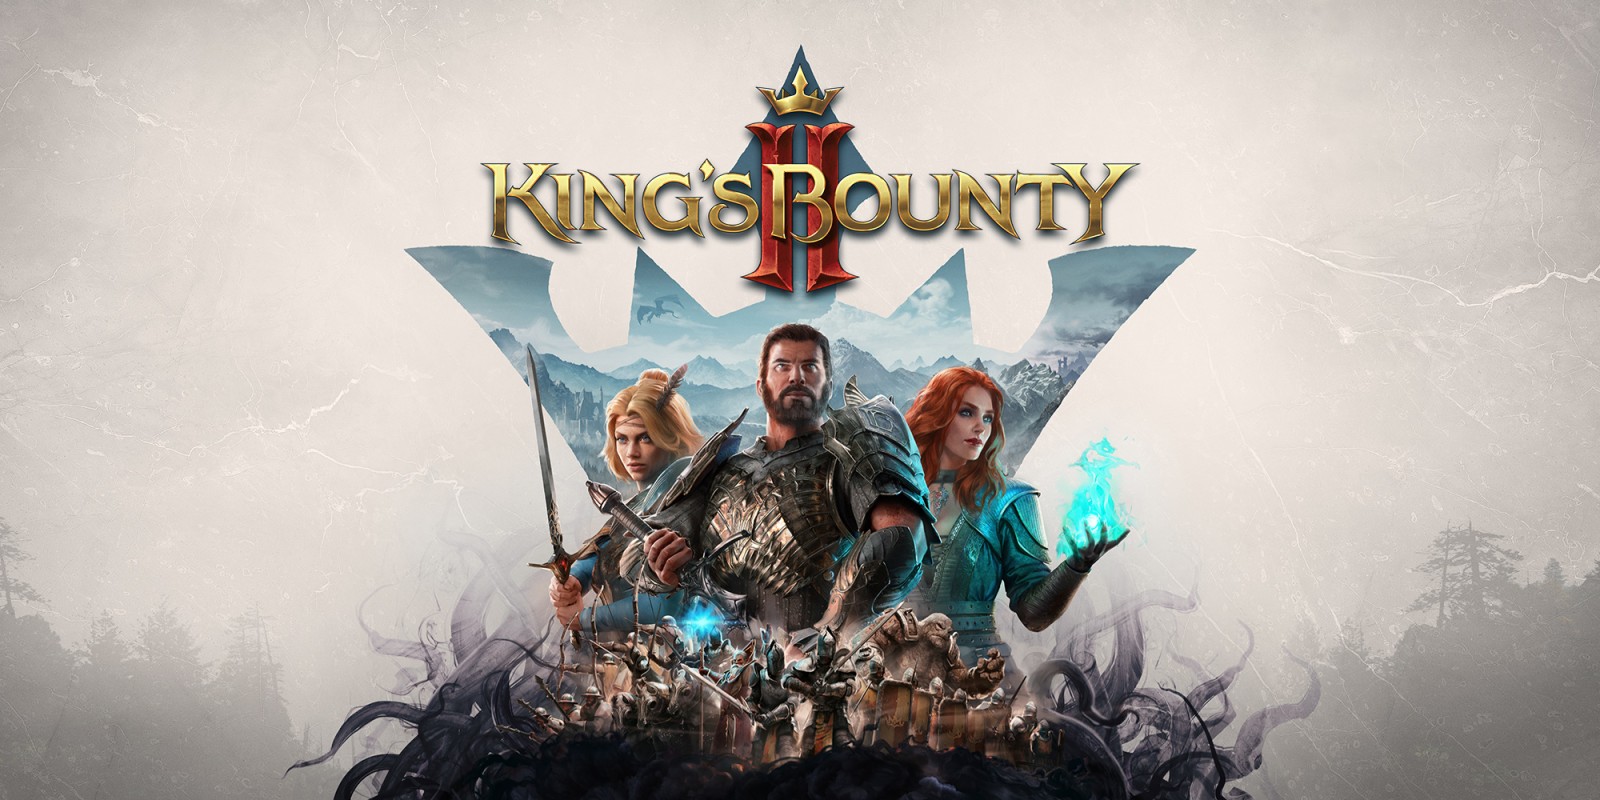 kings bounty ii download free